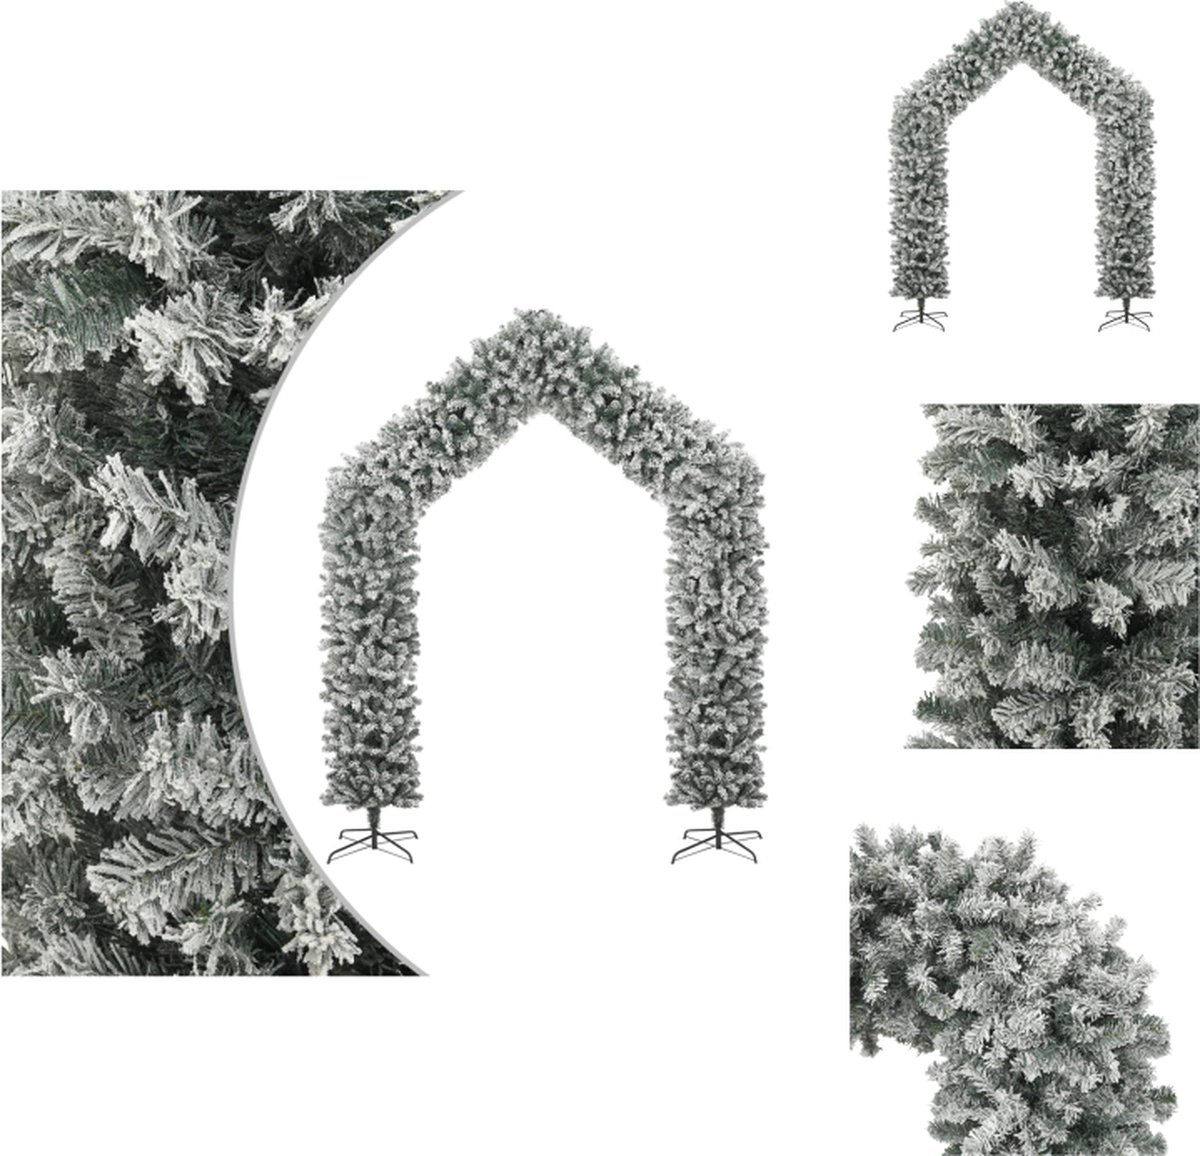 vidaXL Kerstboog - Stalen standaard - PVC uiteinden - Zeer duurzaam - Wit en groen - 215 x 270 cm - 115 x 180/220 cm doorgang - 60 cm breedte standaard - 2.400 uiteinden - vidaXL - Decoratieve kerstboom